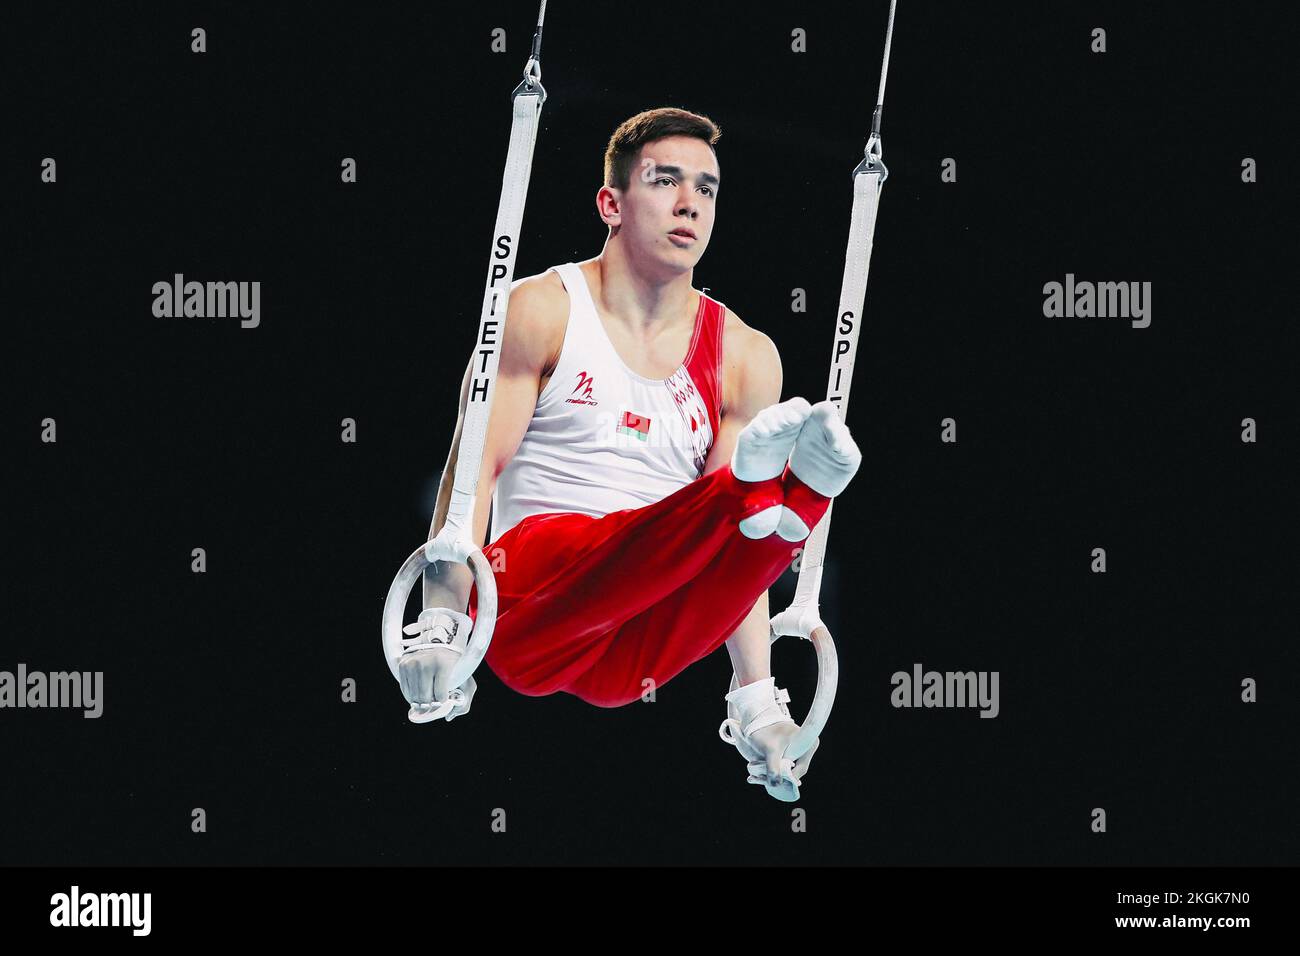 Szczecin, Pologne, 10 avril 2019: Sanuvonh Dzianis, athlète olympique bélarussien, est en compétition sur les anneaux lors des championnats de gymnastique artistique Banque D'Images